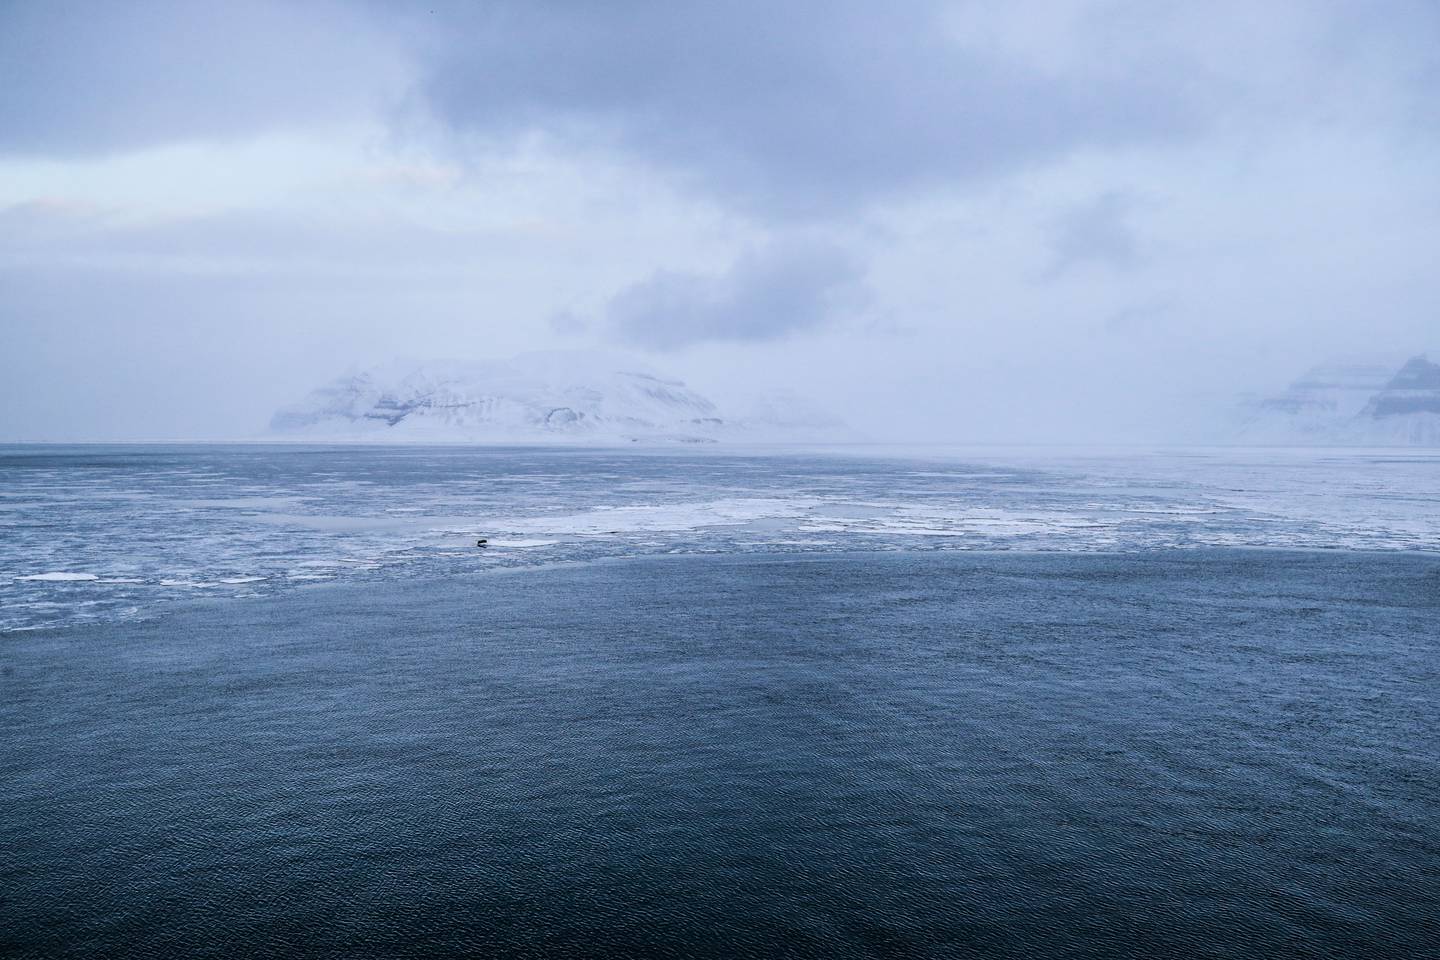 Temperaturen i området rundt Svalbard stiger tre ganger så fort som på resten av kloden. Stadig flere land viser interesse for de etter hvert nye havområdene for fisking, transport og eventuelt olje- og gassfelt. Bildet er tatt i 2020 og viser en hvalross på et isflak. Arkivfoto: Lise Åserud / NTB